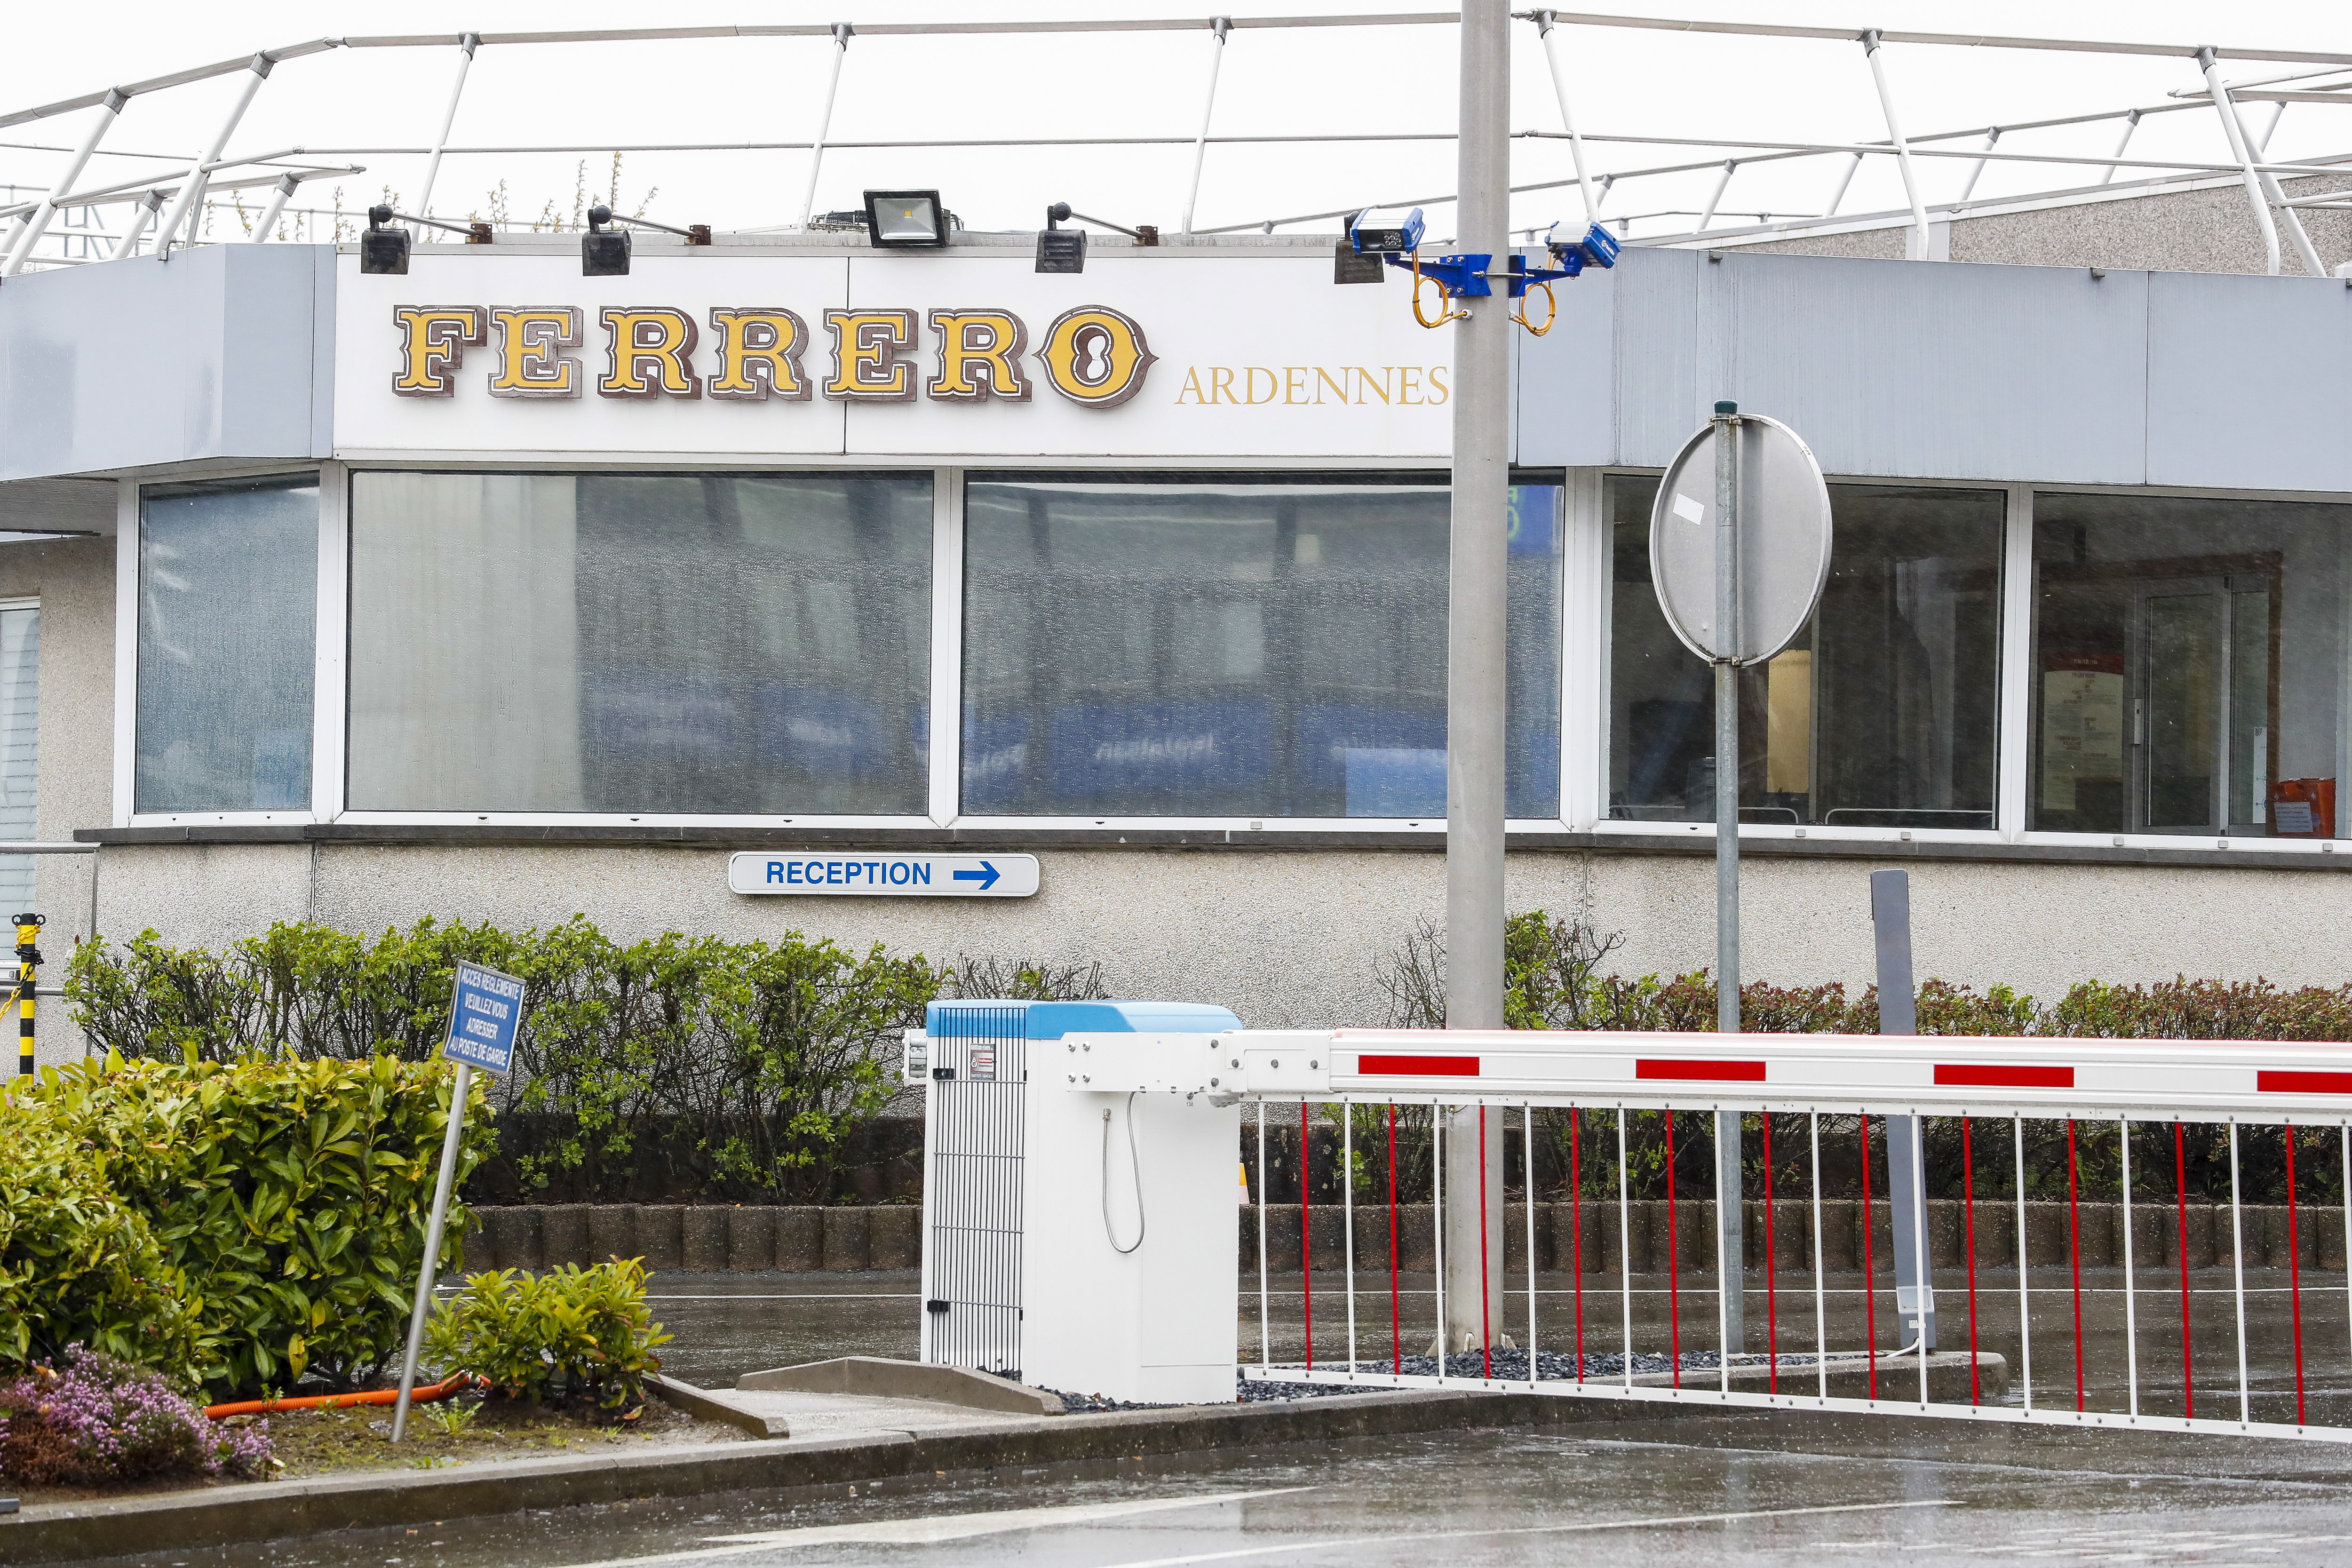 Ovetti Kinder e salmonella, Ferrero: Ritirate 3.000 tonnellate in